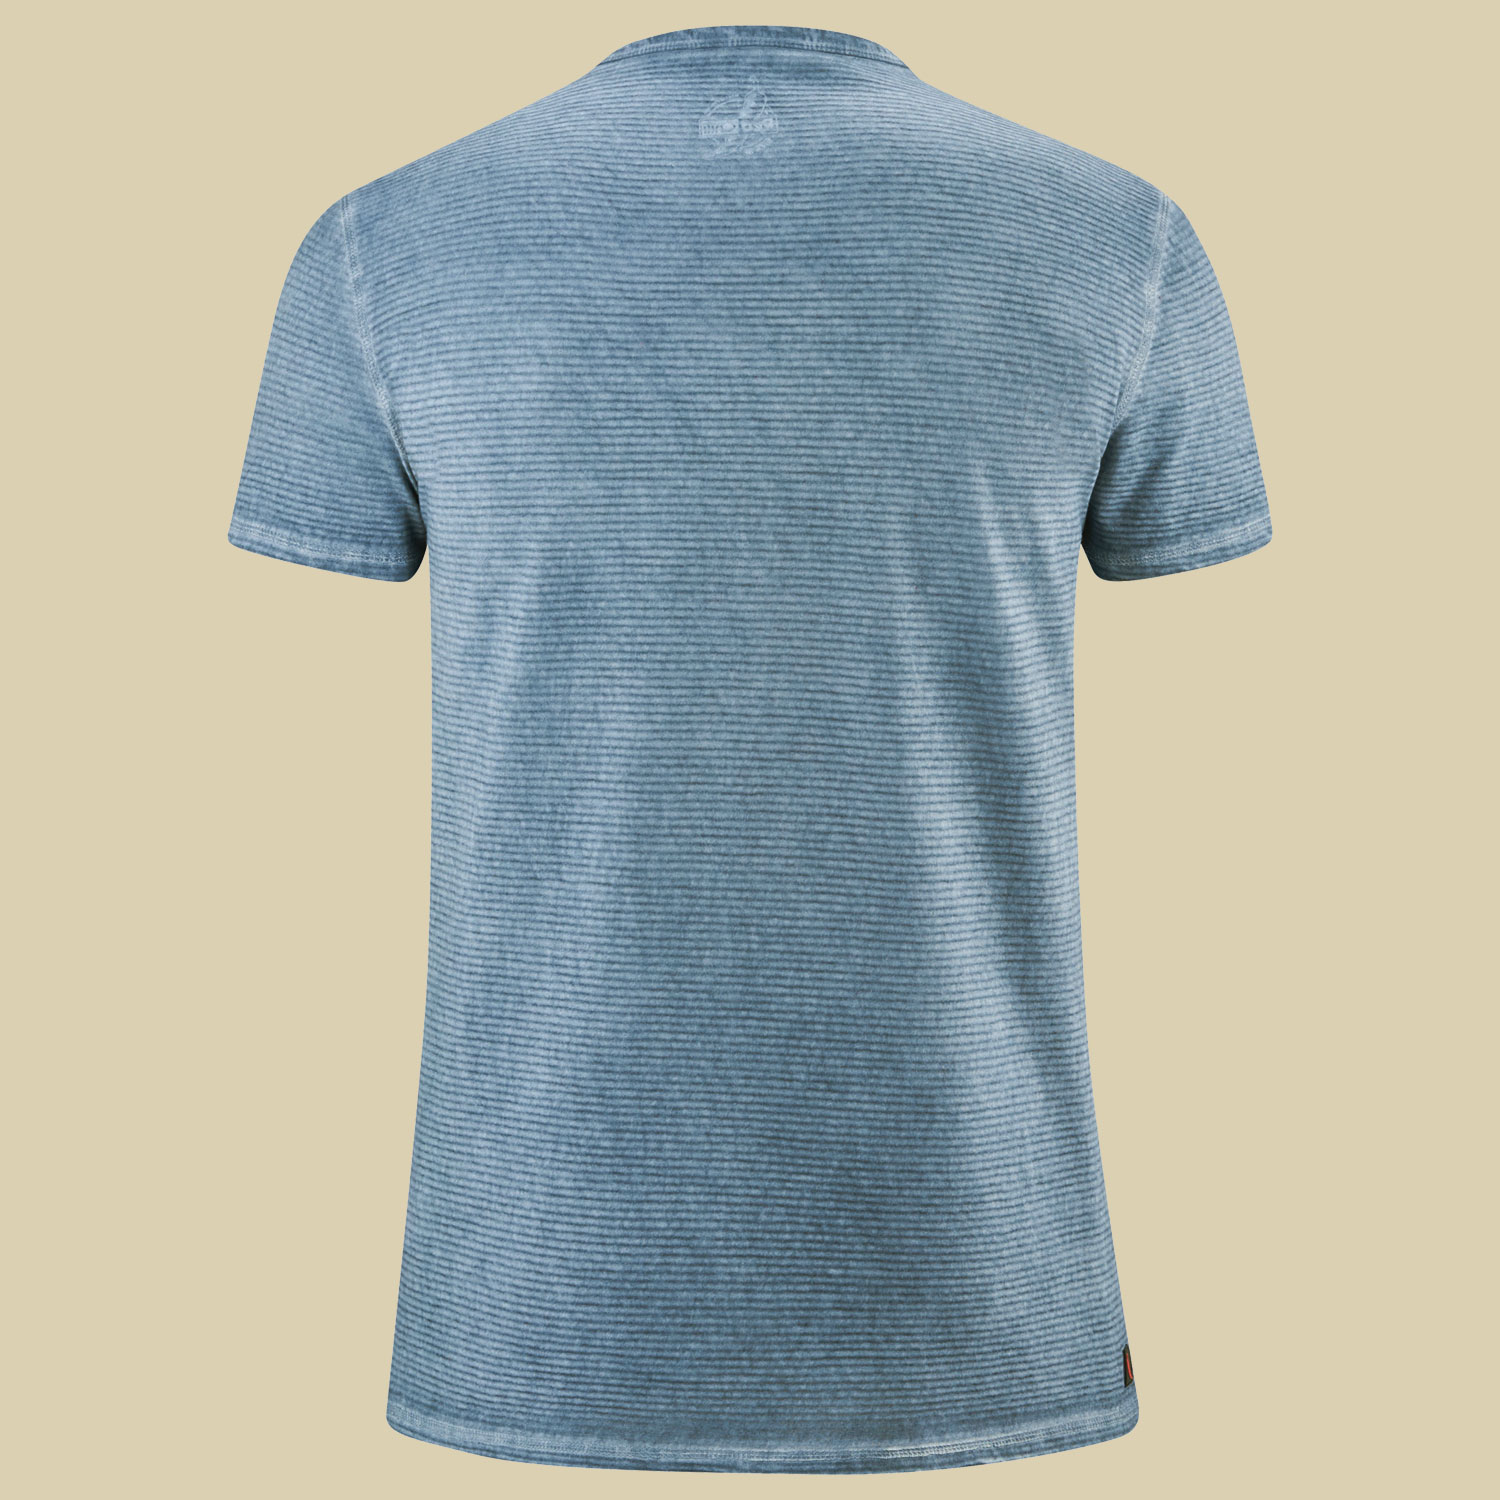 Kendo T-Shirt Men Größe M  Farbe shark blue